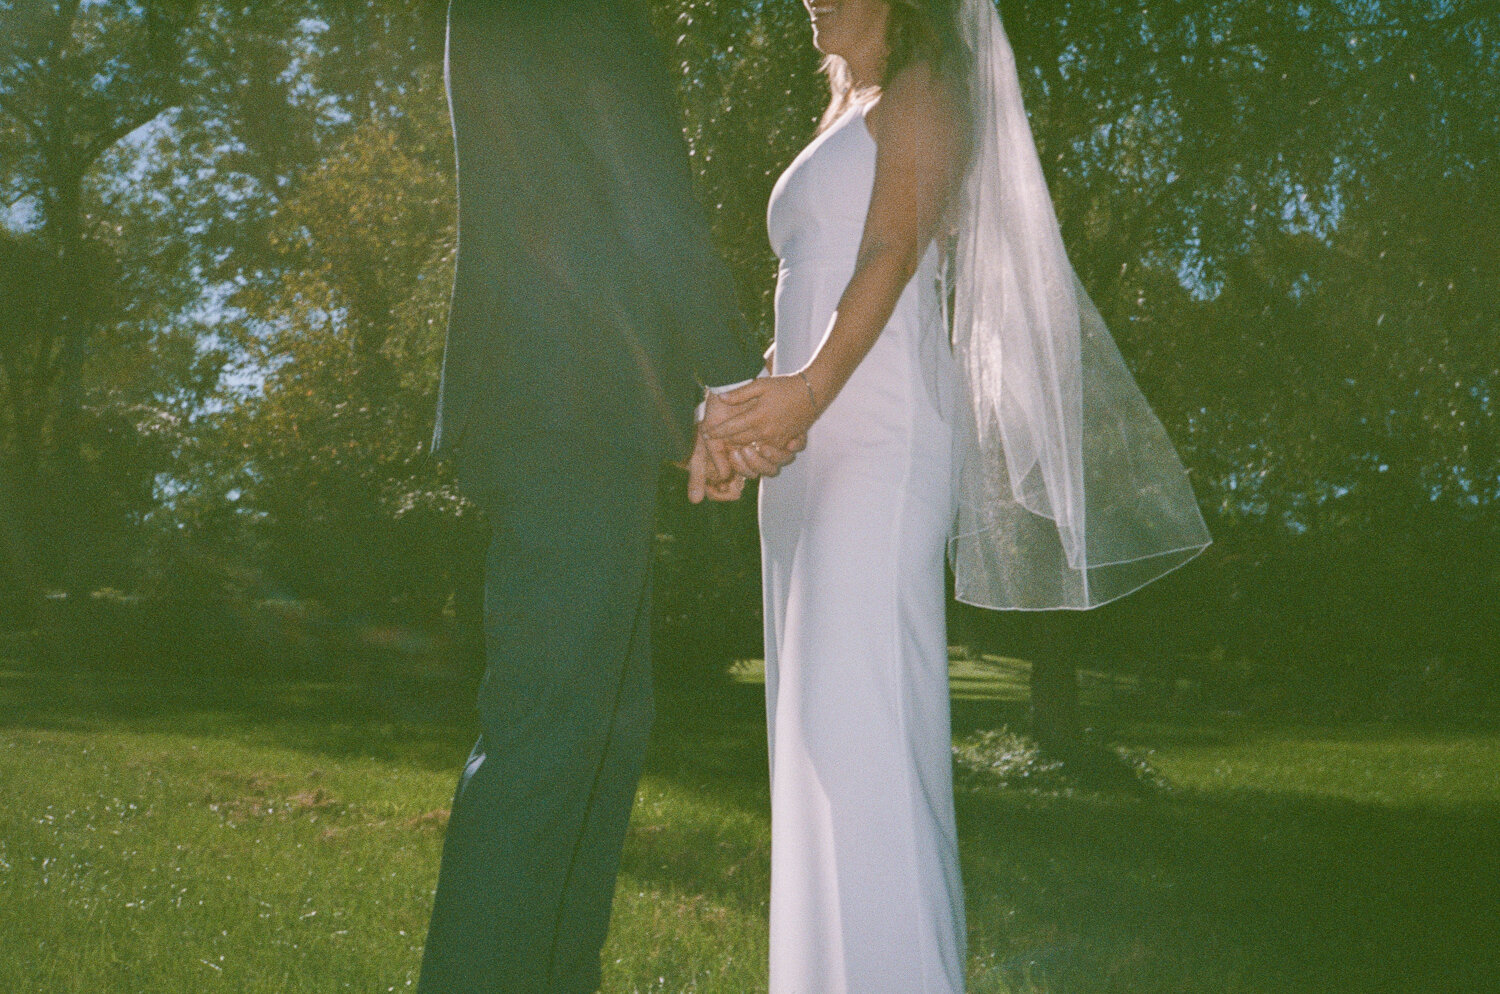 Analog-Film-Micro-Wedding-Photos-Inspiration-Backyard-Toronto-Ontario-64.JPG